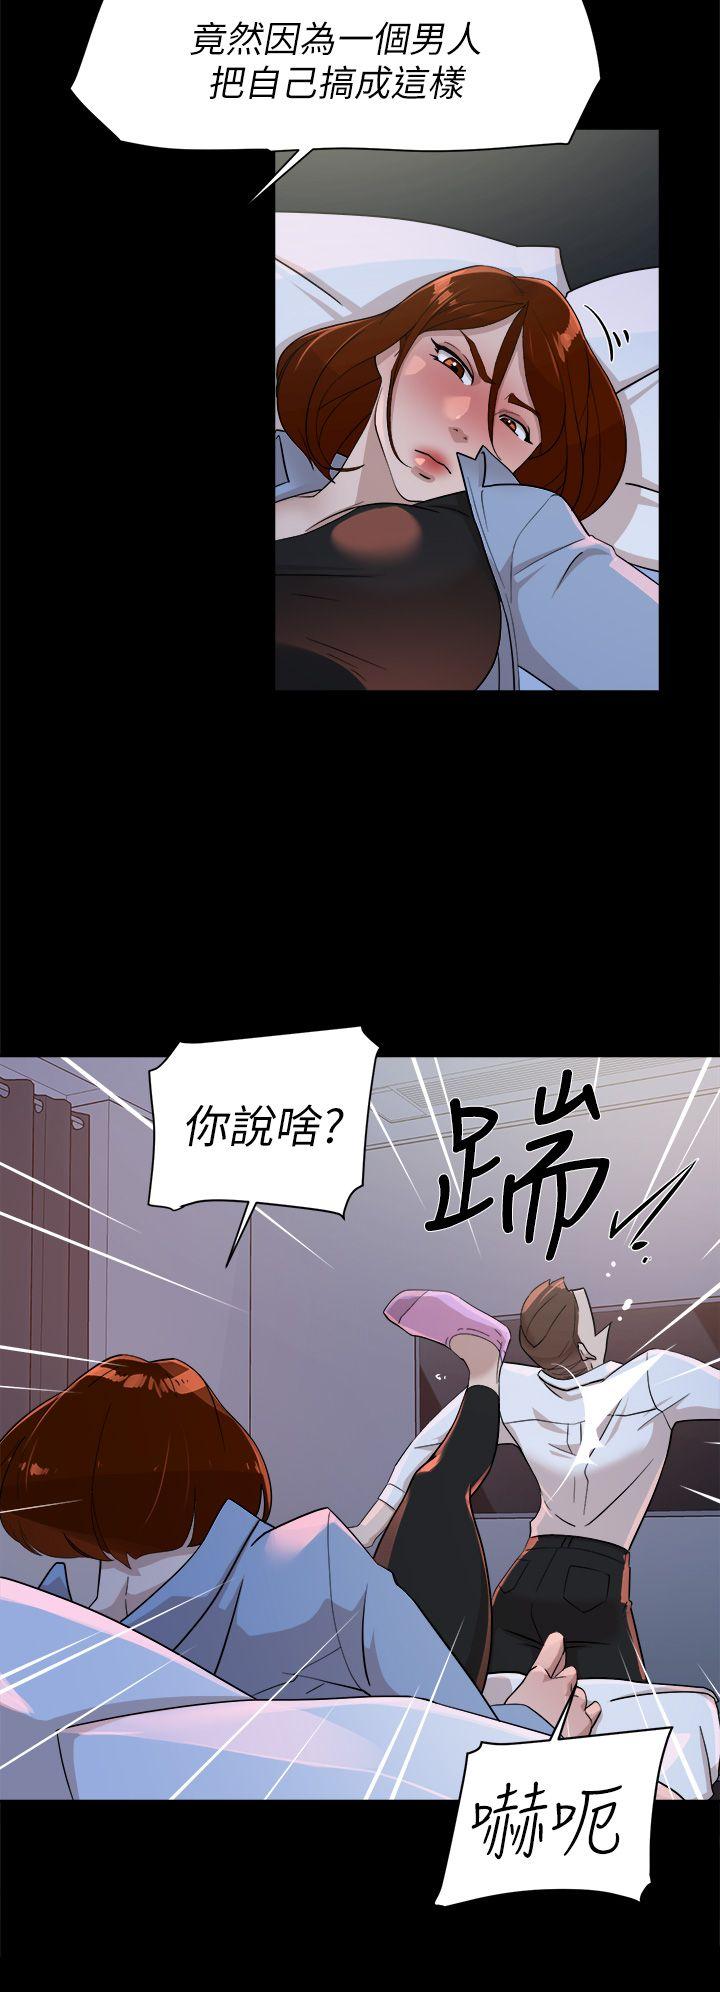 韩国污漫画 她的高跟鞋(無刪減) 第68话-为了忘记真宇的挣扎 10